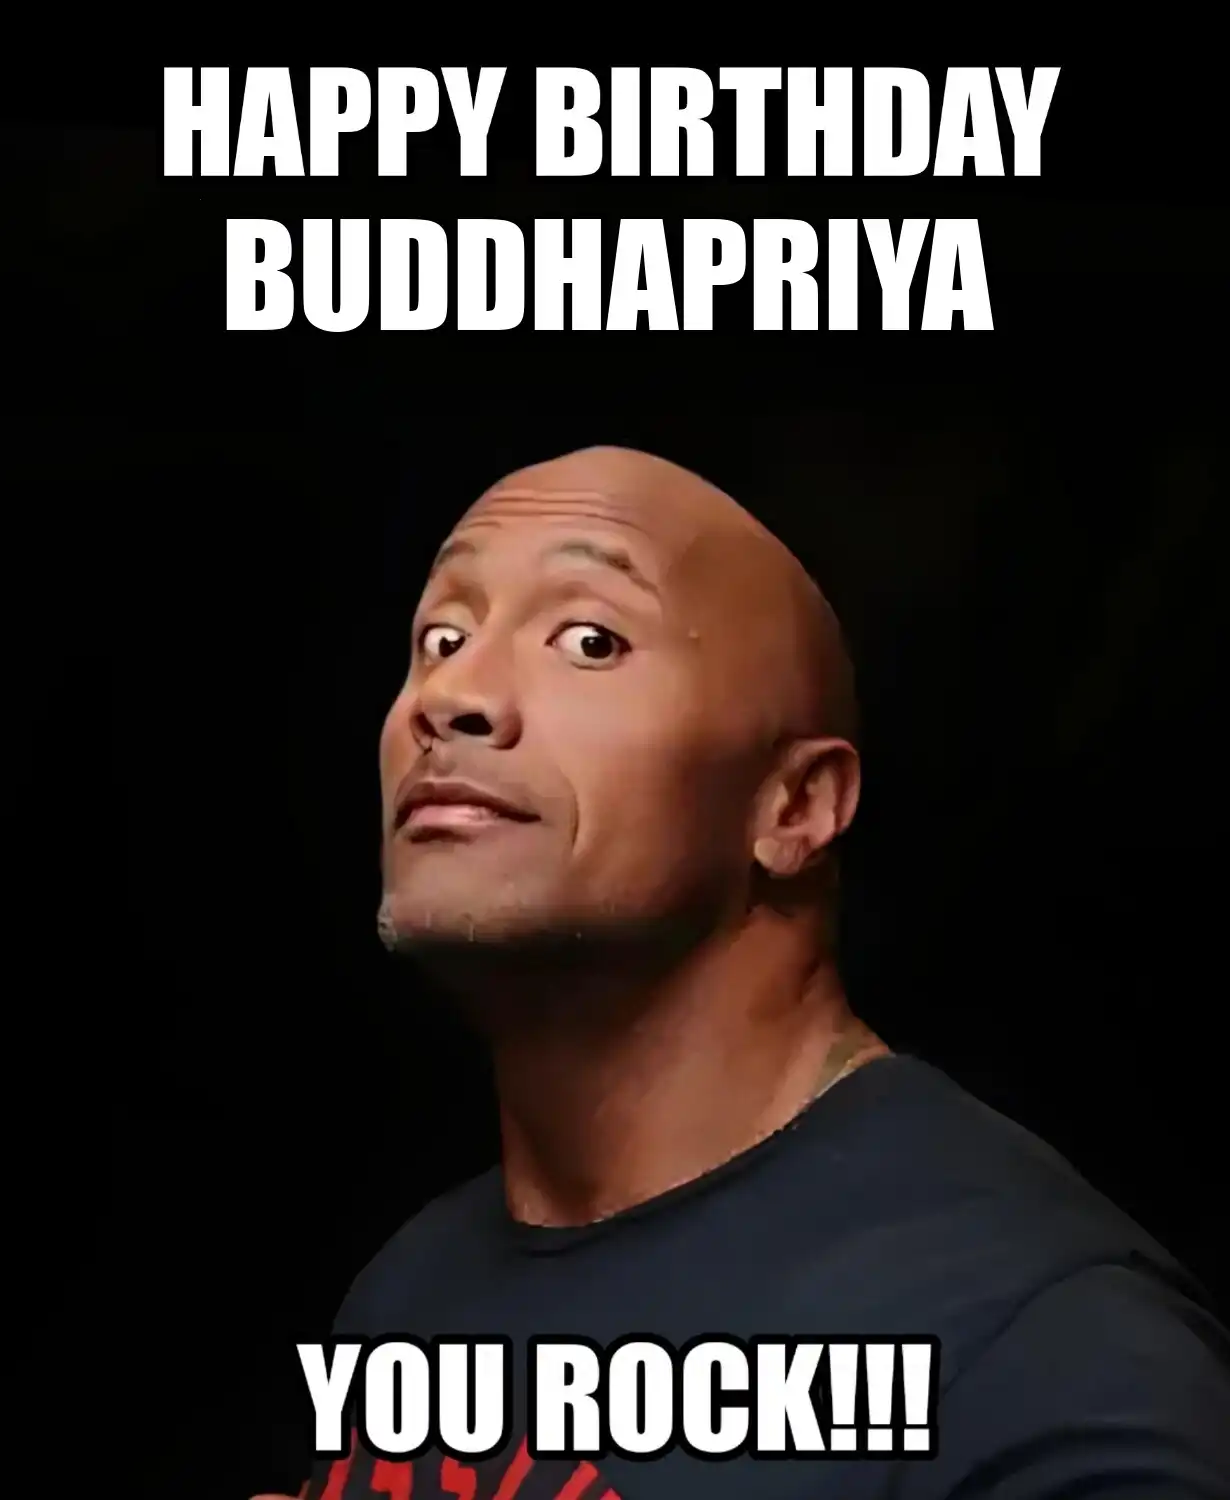 Happy Birthday Buddhapriya You Rock Meme